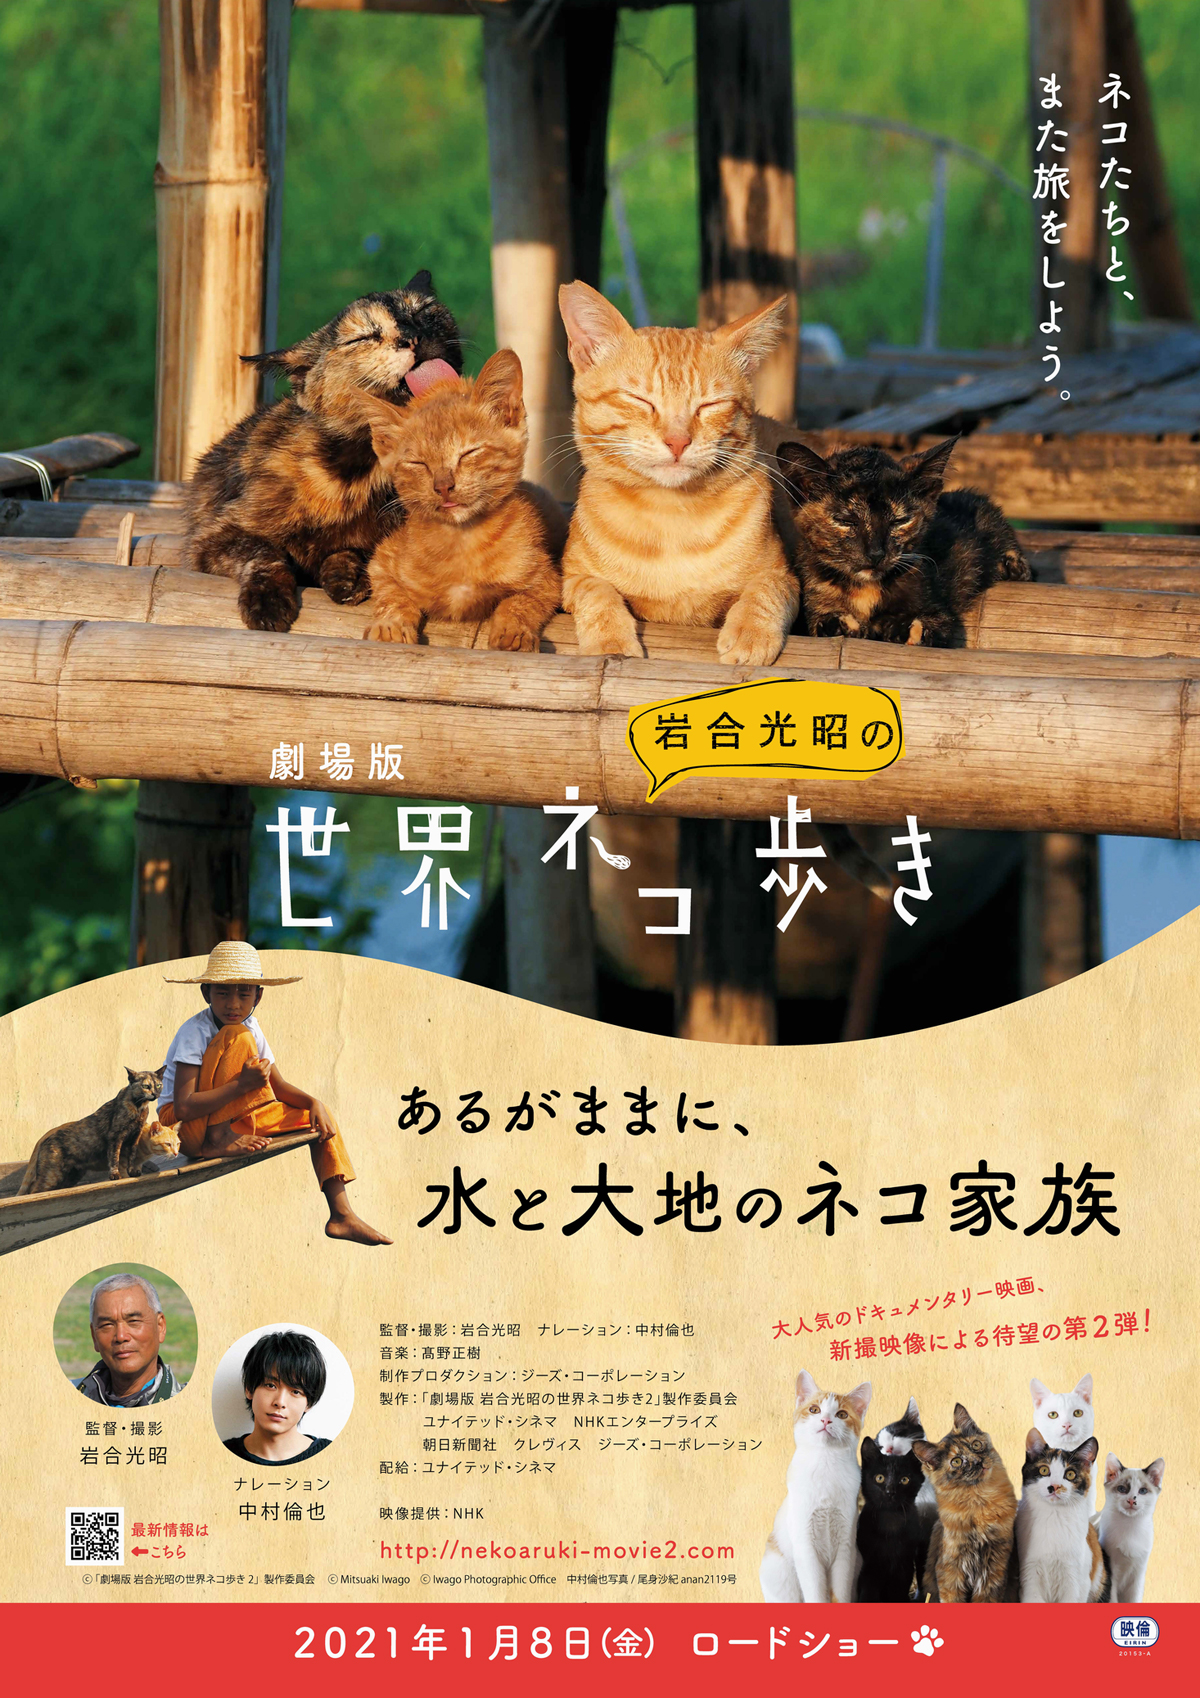 劇場版 岩合光昭の世界ネコ歩き あるがままに、水と大地のネコ家族の画像